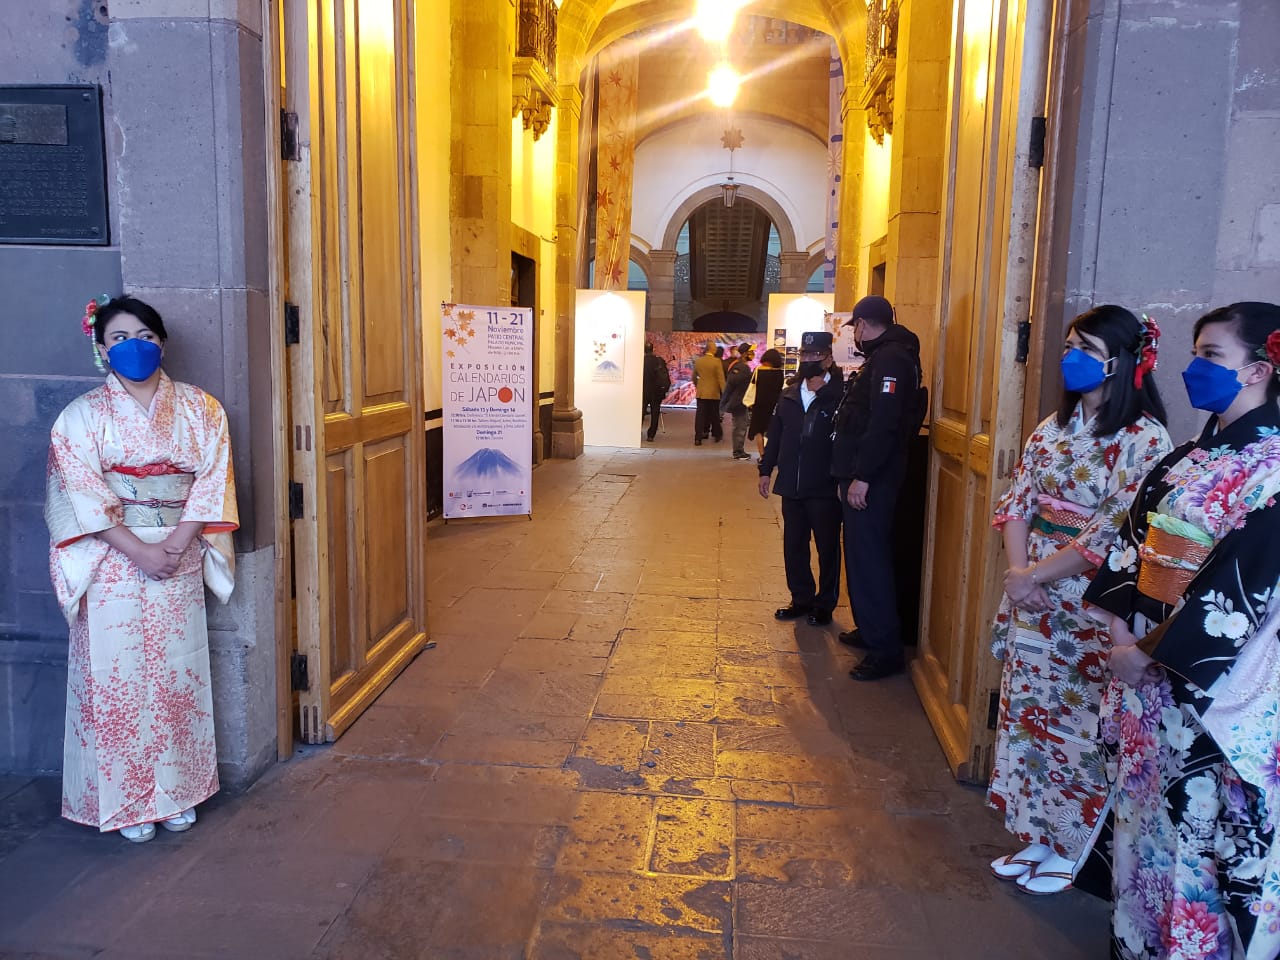 Se inauguró la exposición Calendarios Japoneses, a través de Cultura Municipal, en coordinación con el Consulado de Japón en León y la Asociación Nikkei